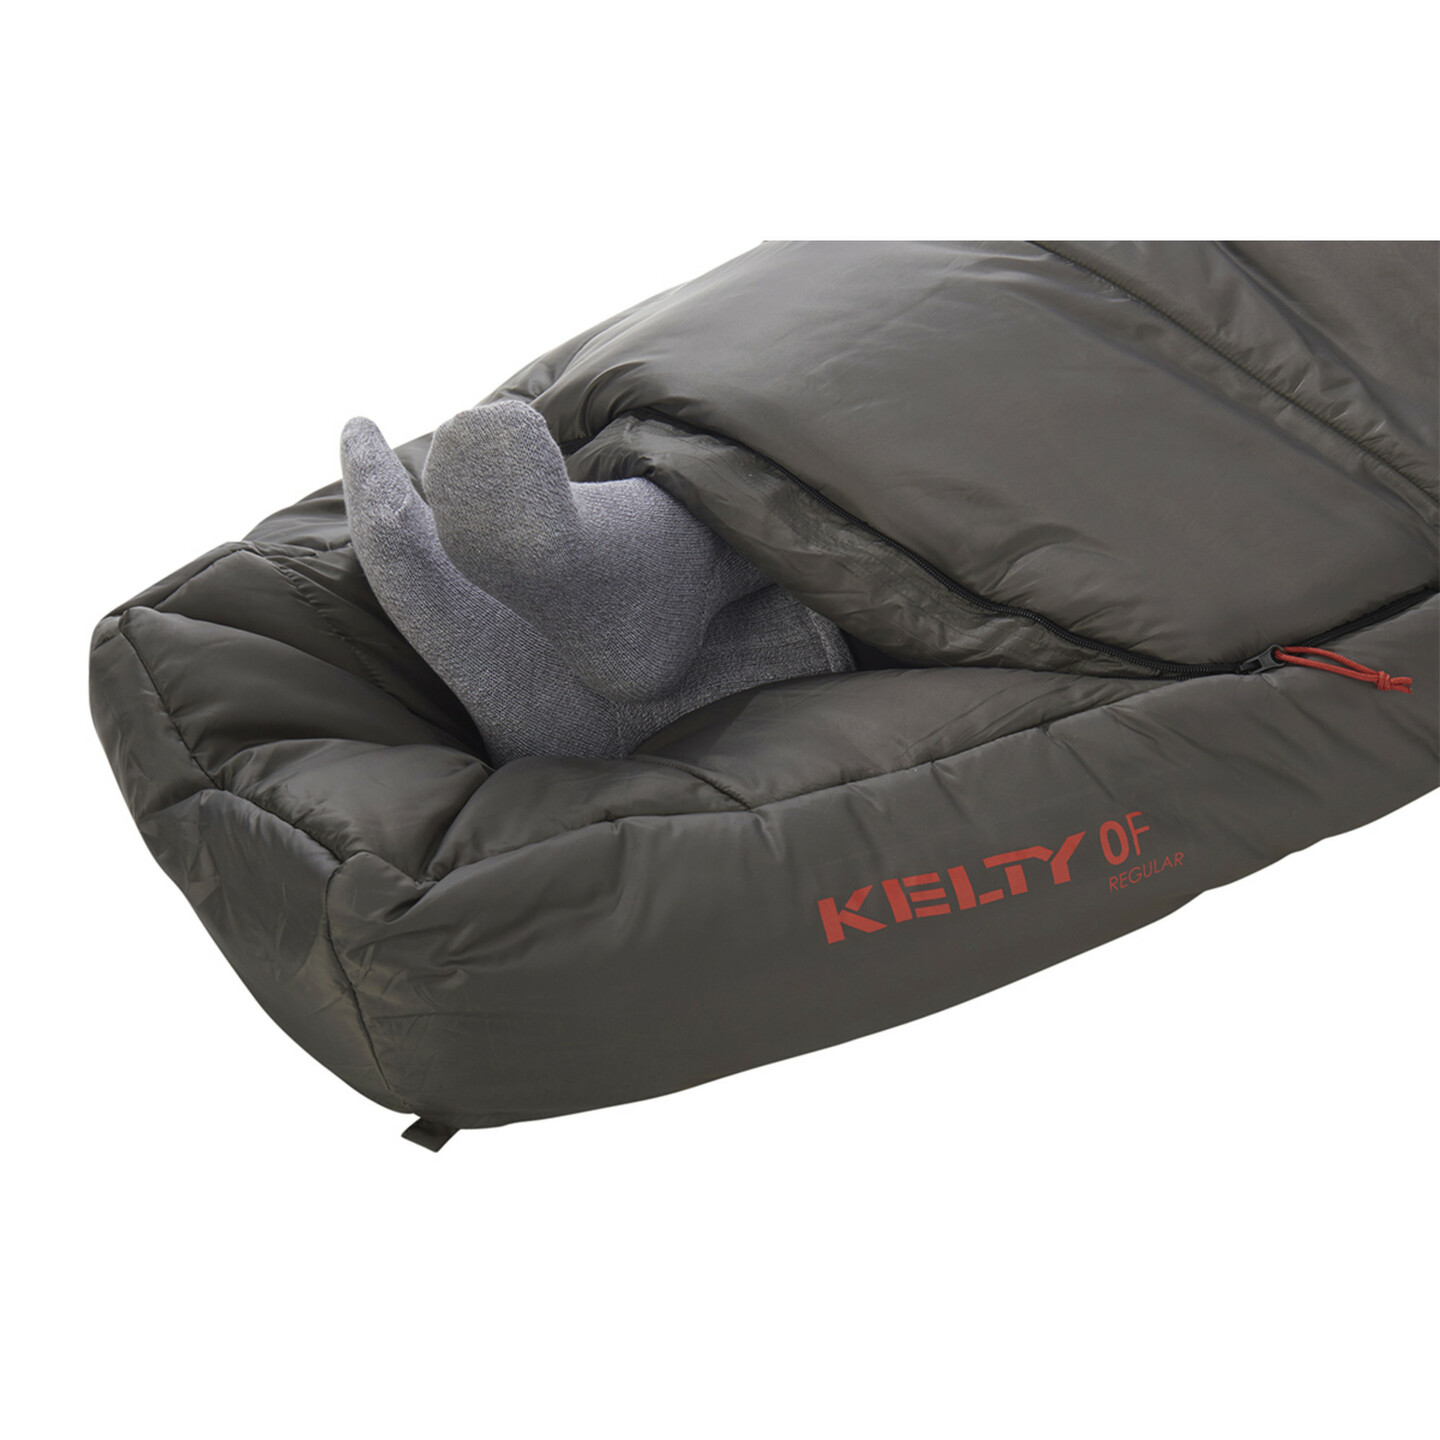 Kelty Tuck 0 Sleeping Bag